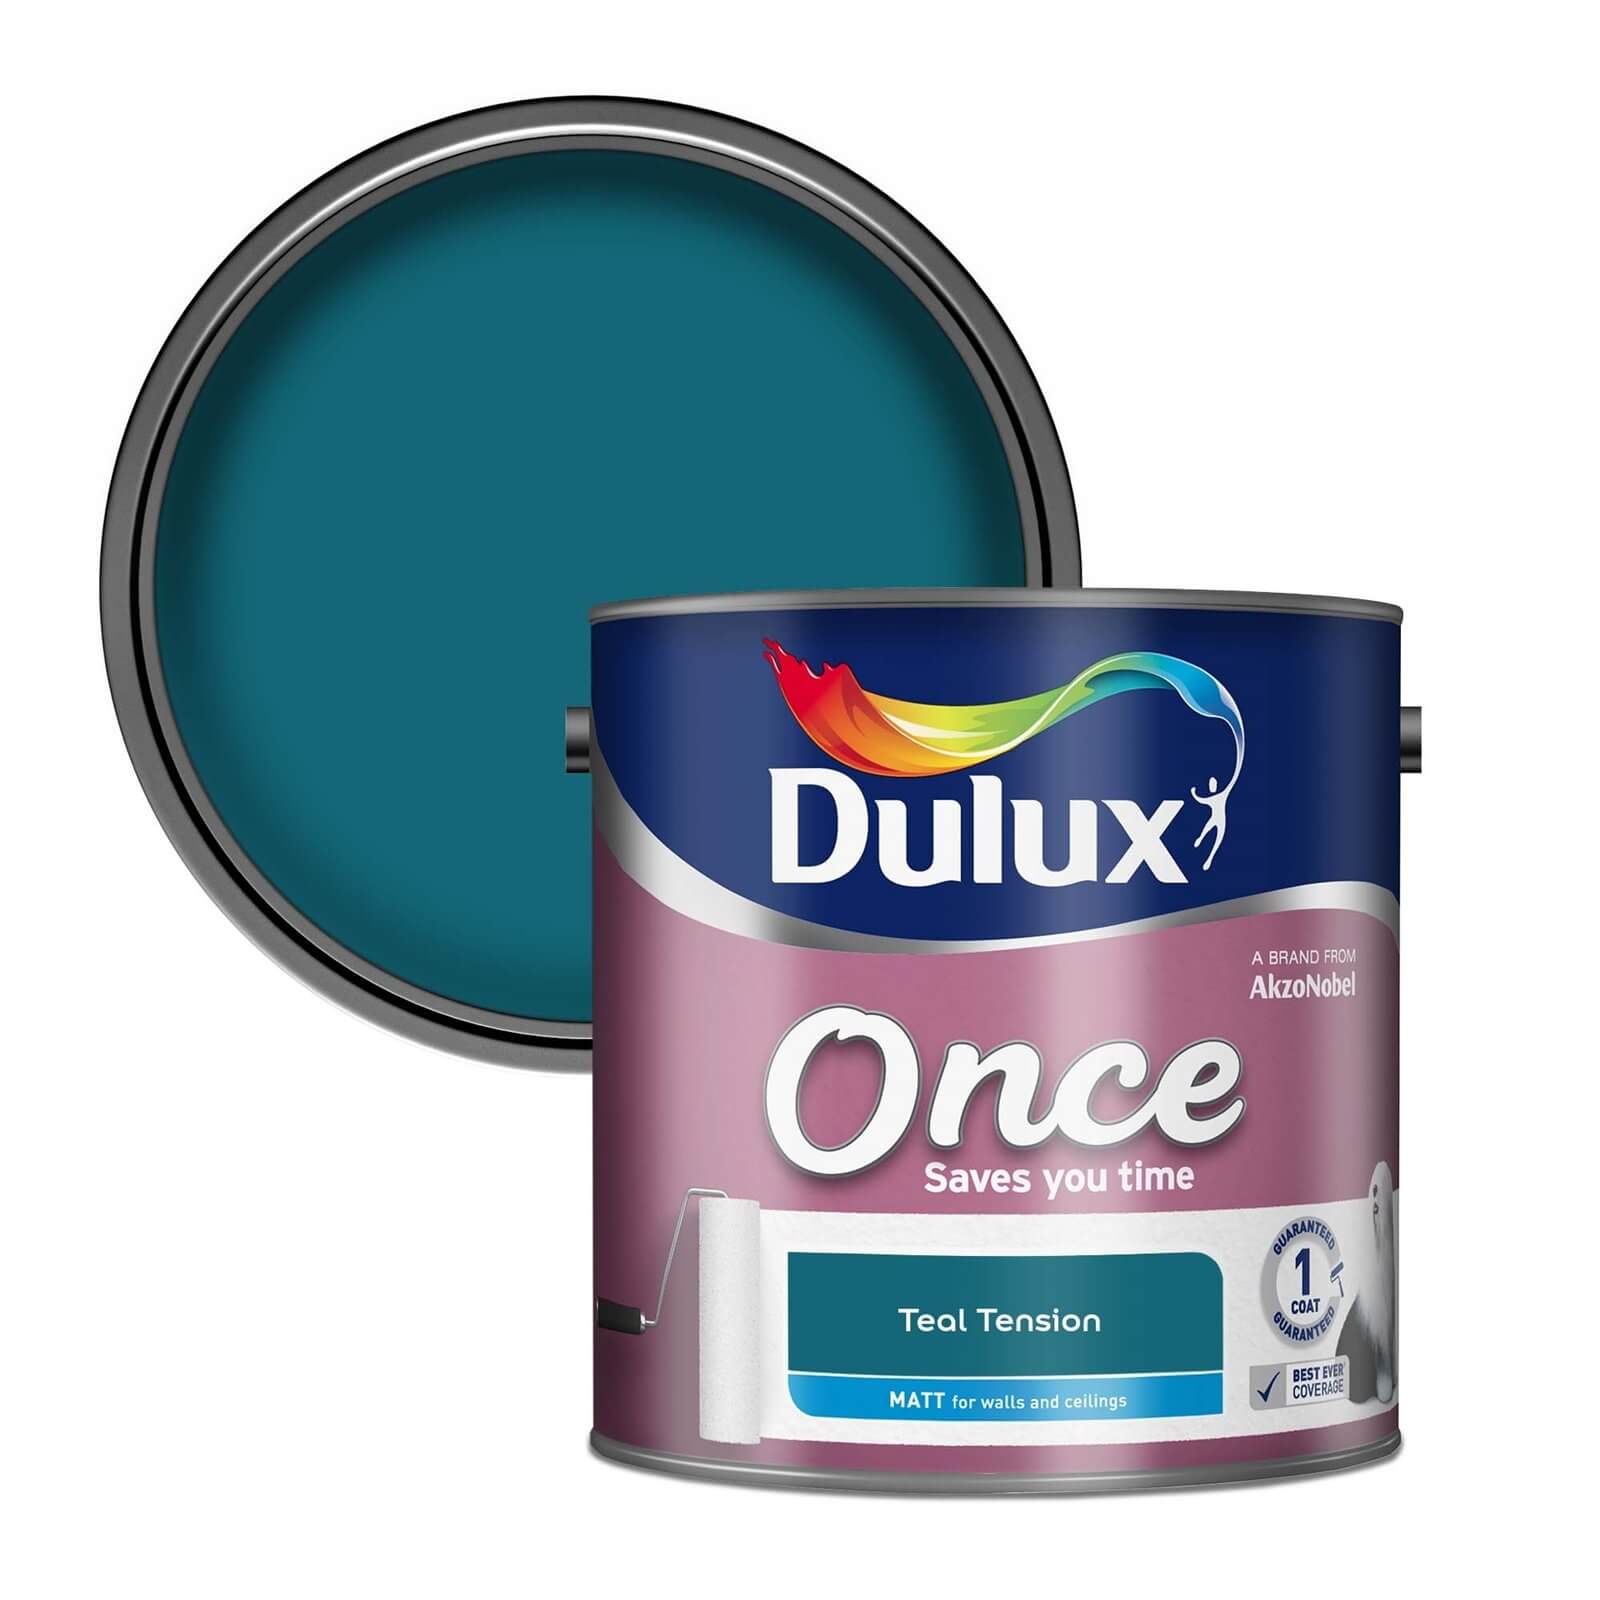 Dulux Once Teal Tension - Matt Paint - 2.5L